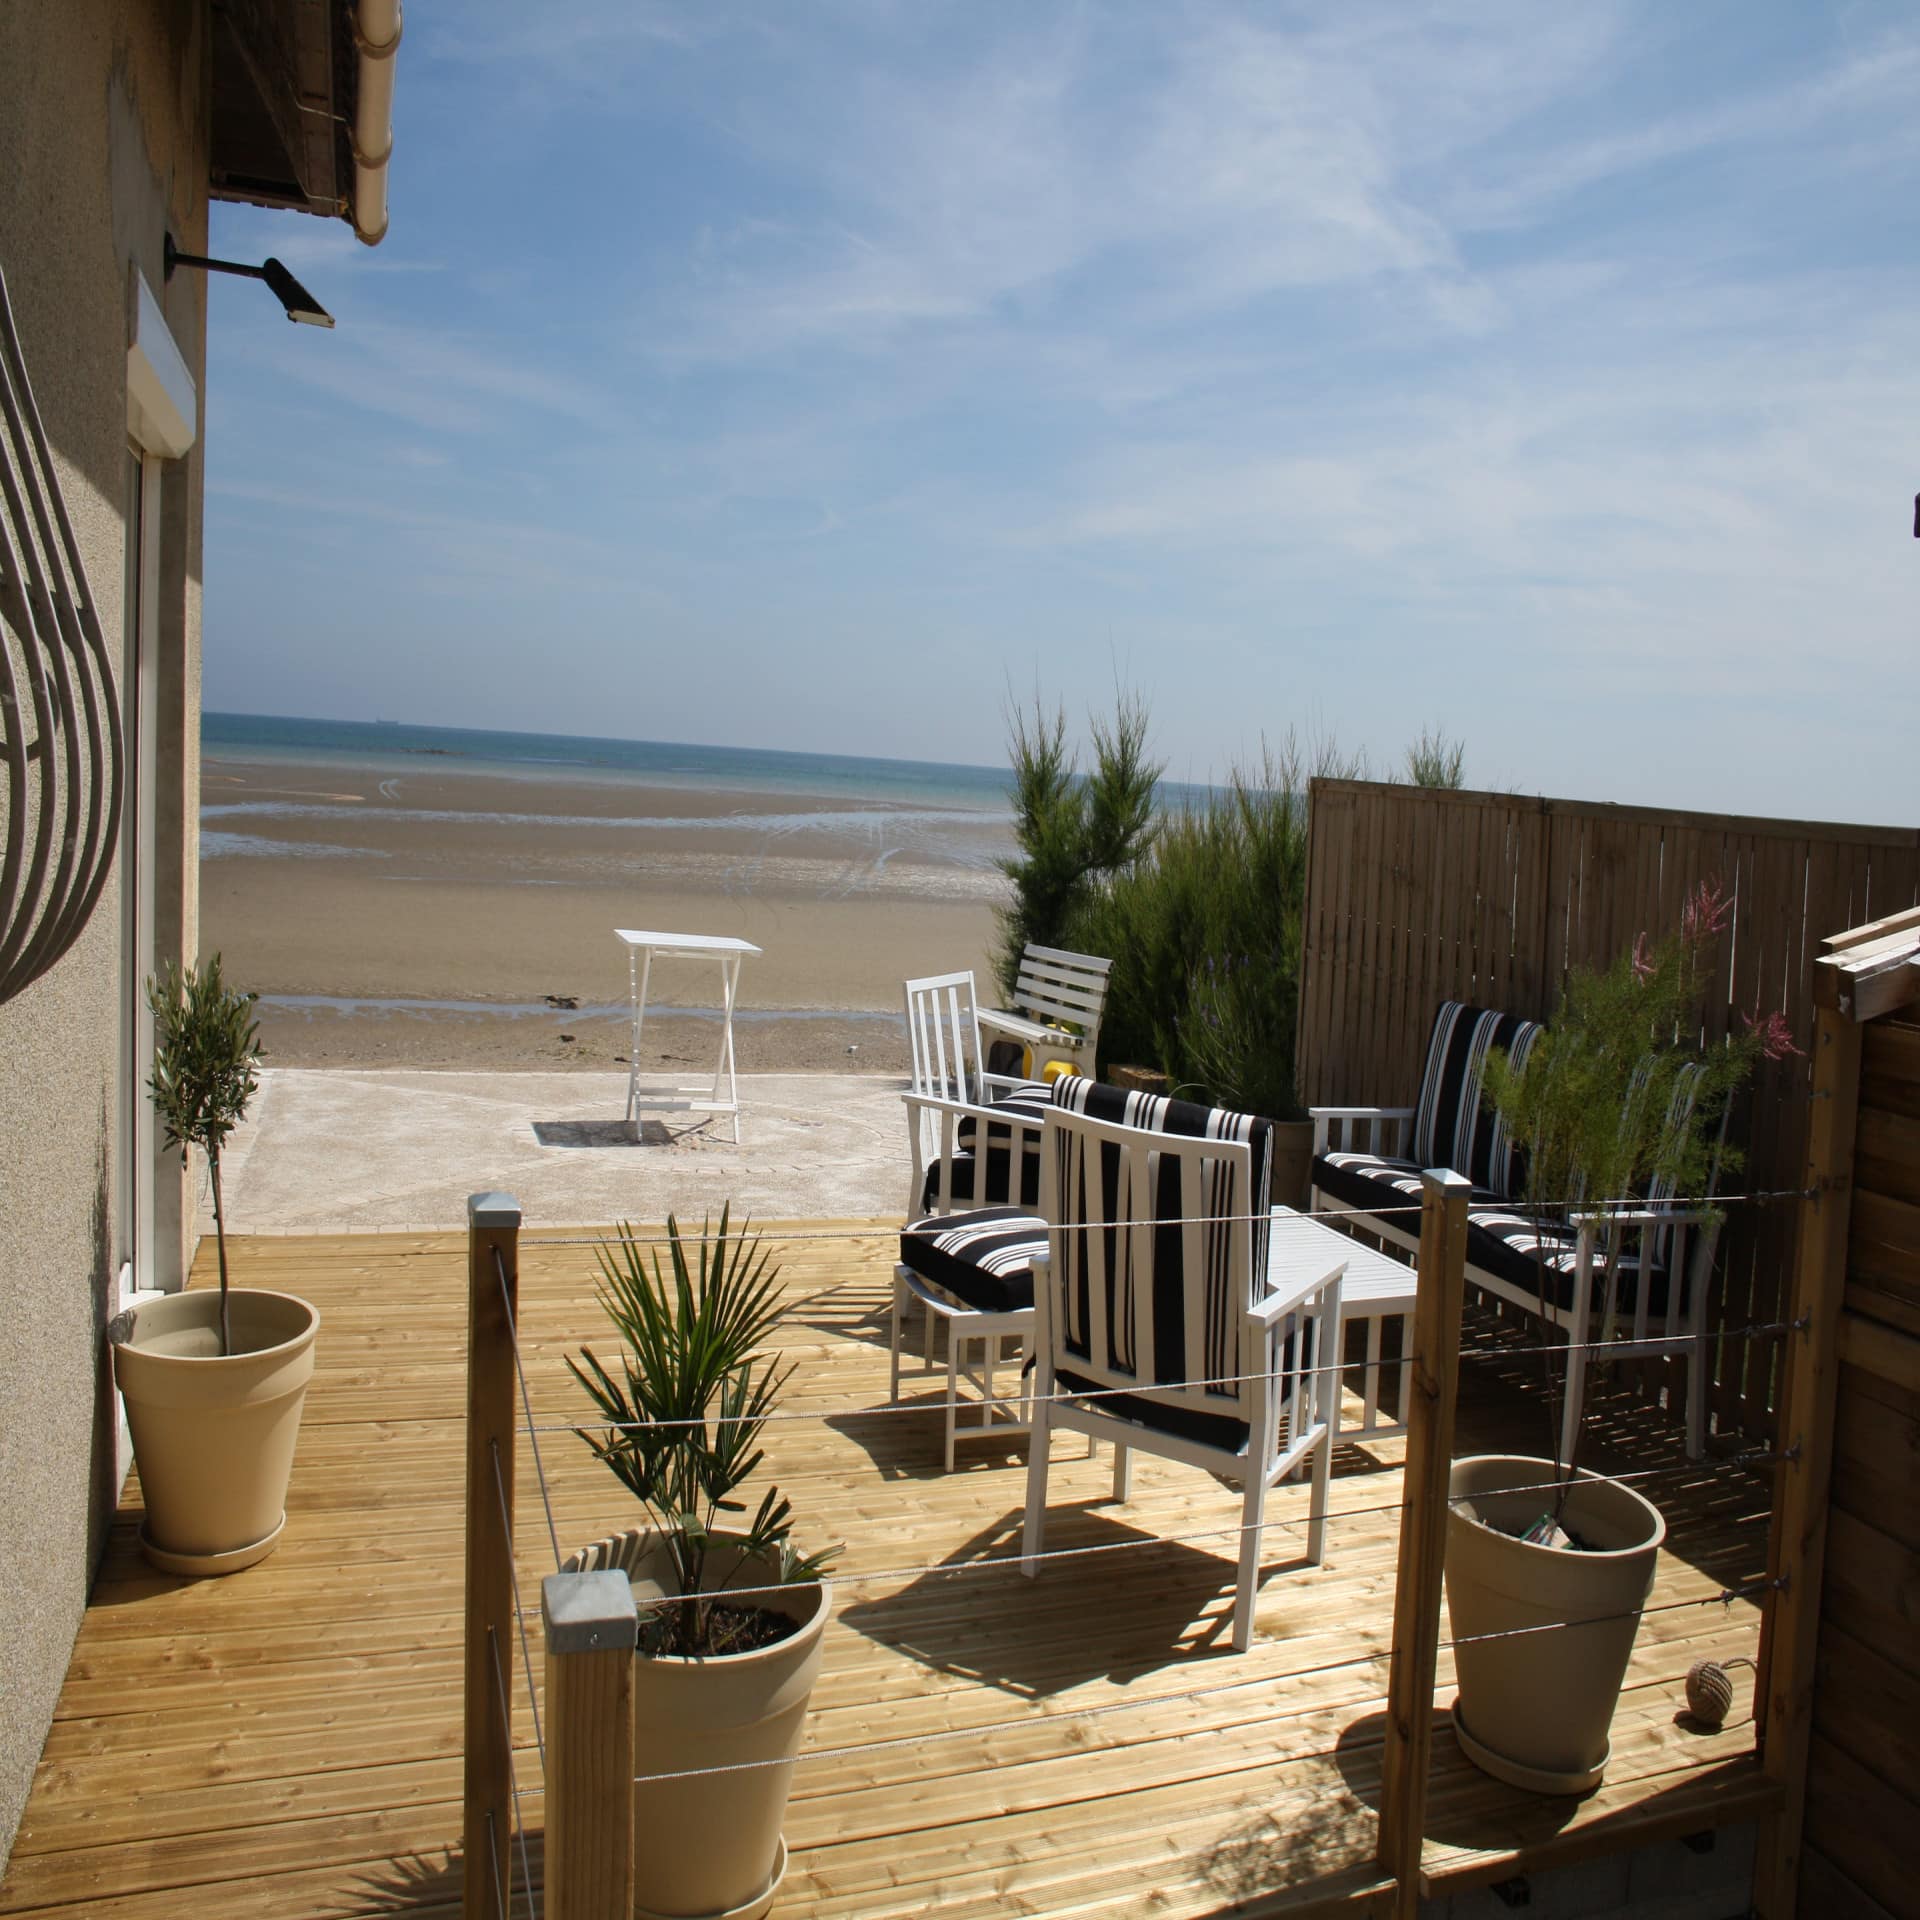 Haus mit Holzveranda und Sitzgelegenheiten direkt am Strand der Normandie. Die Sonne scheint. 